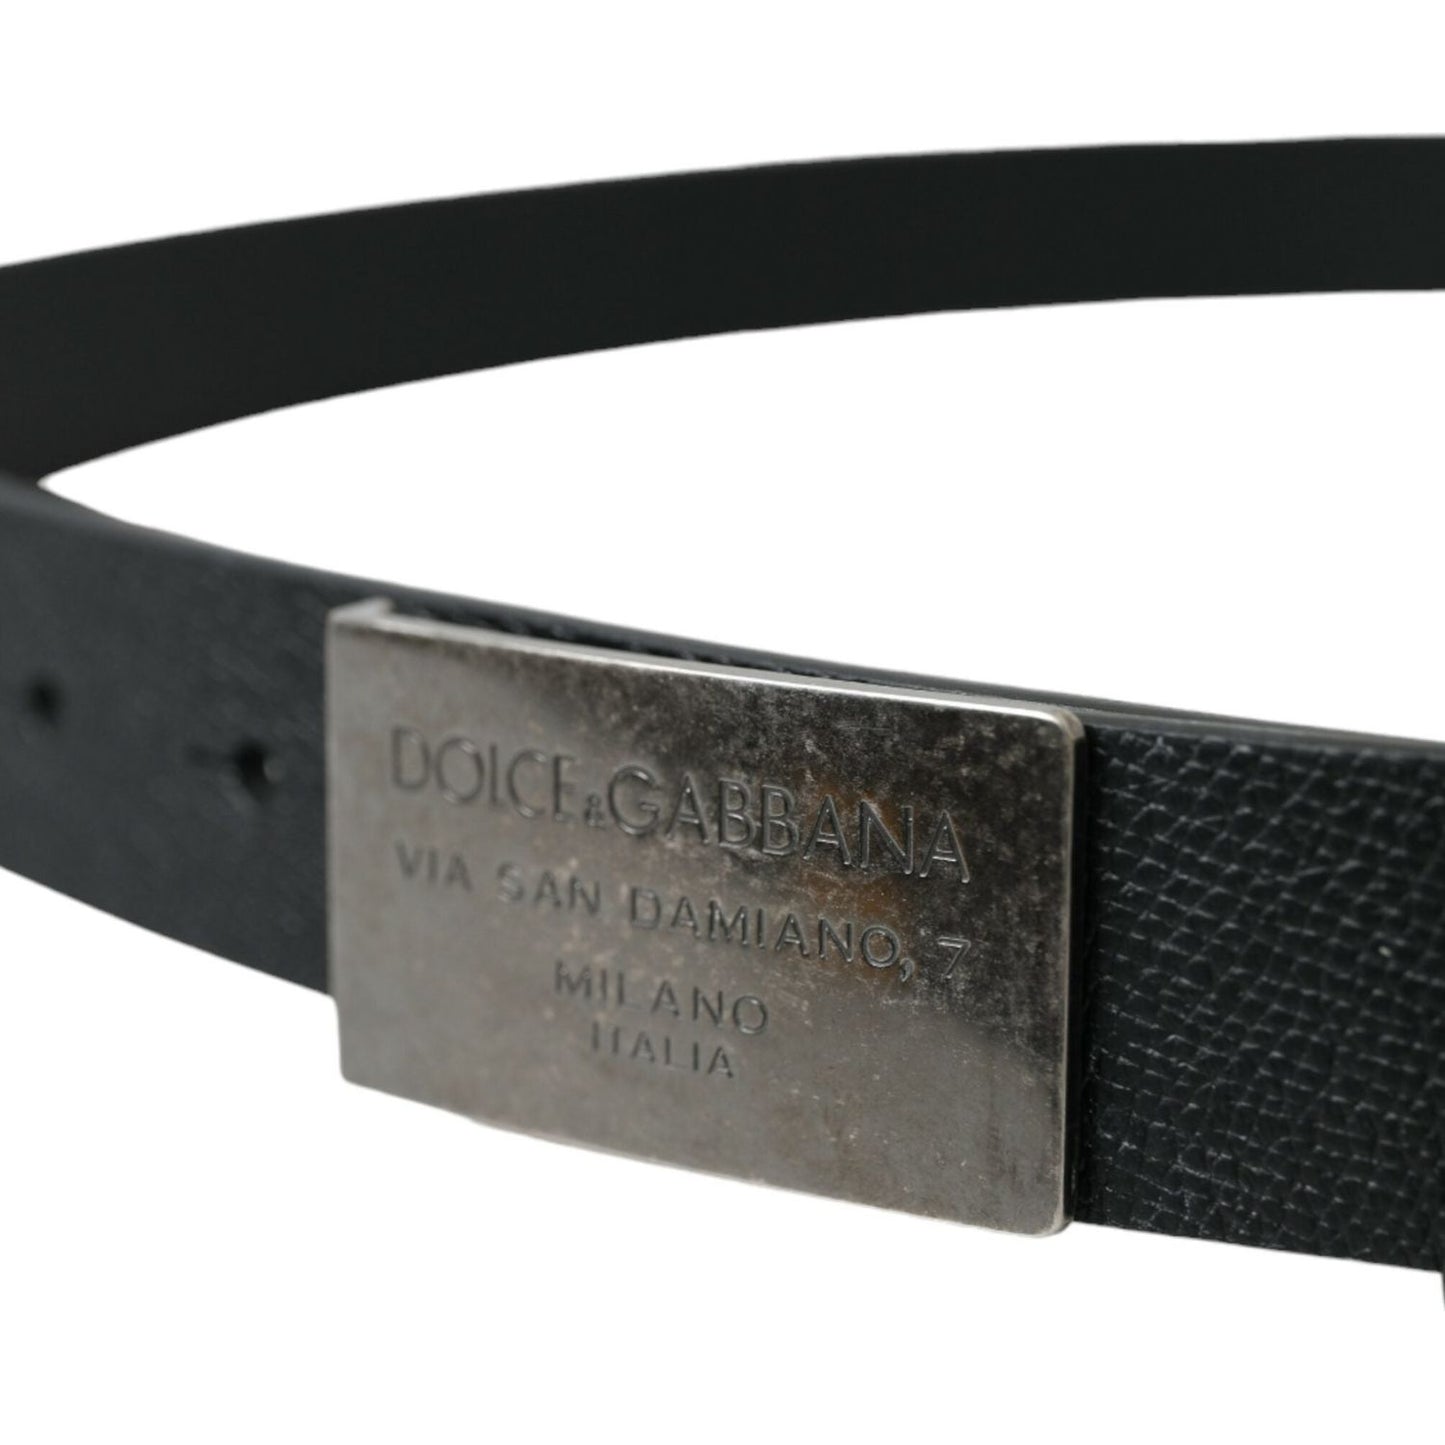 Dolce & Gabbana | Elegant Black Calf Leather Belt with Metal Buckle| McRichard Designer Brands   